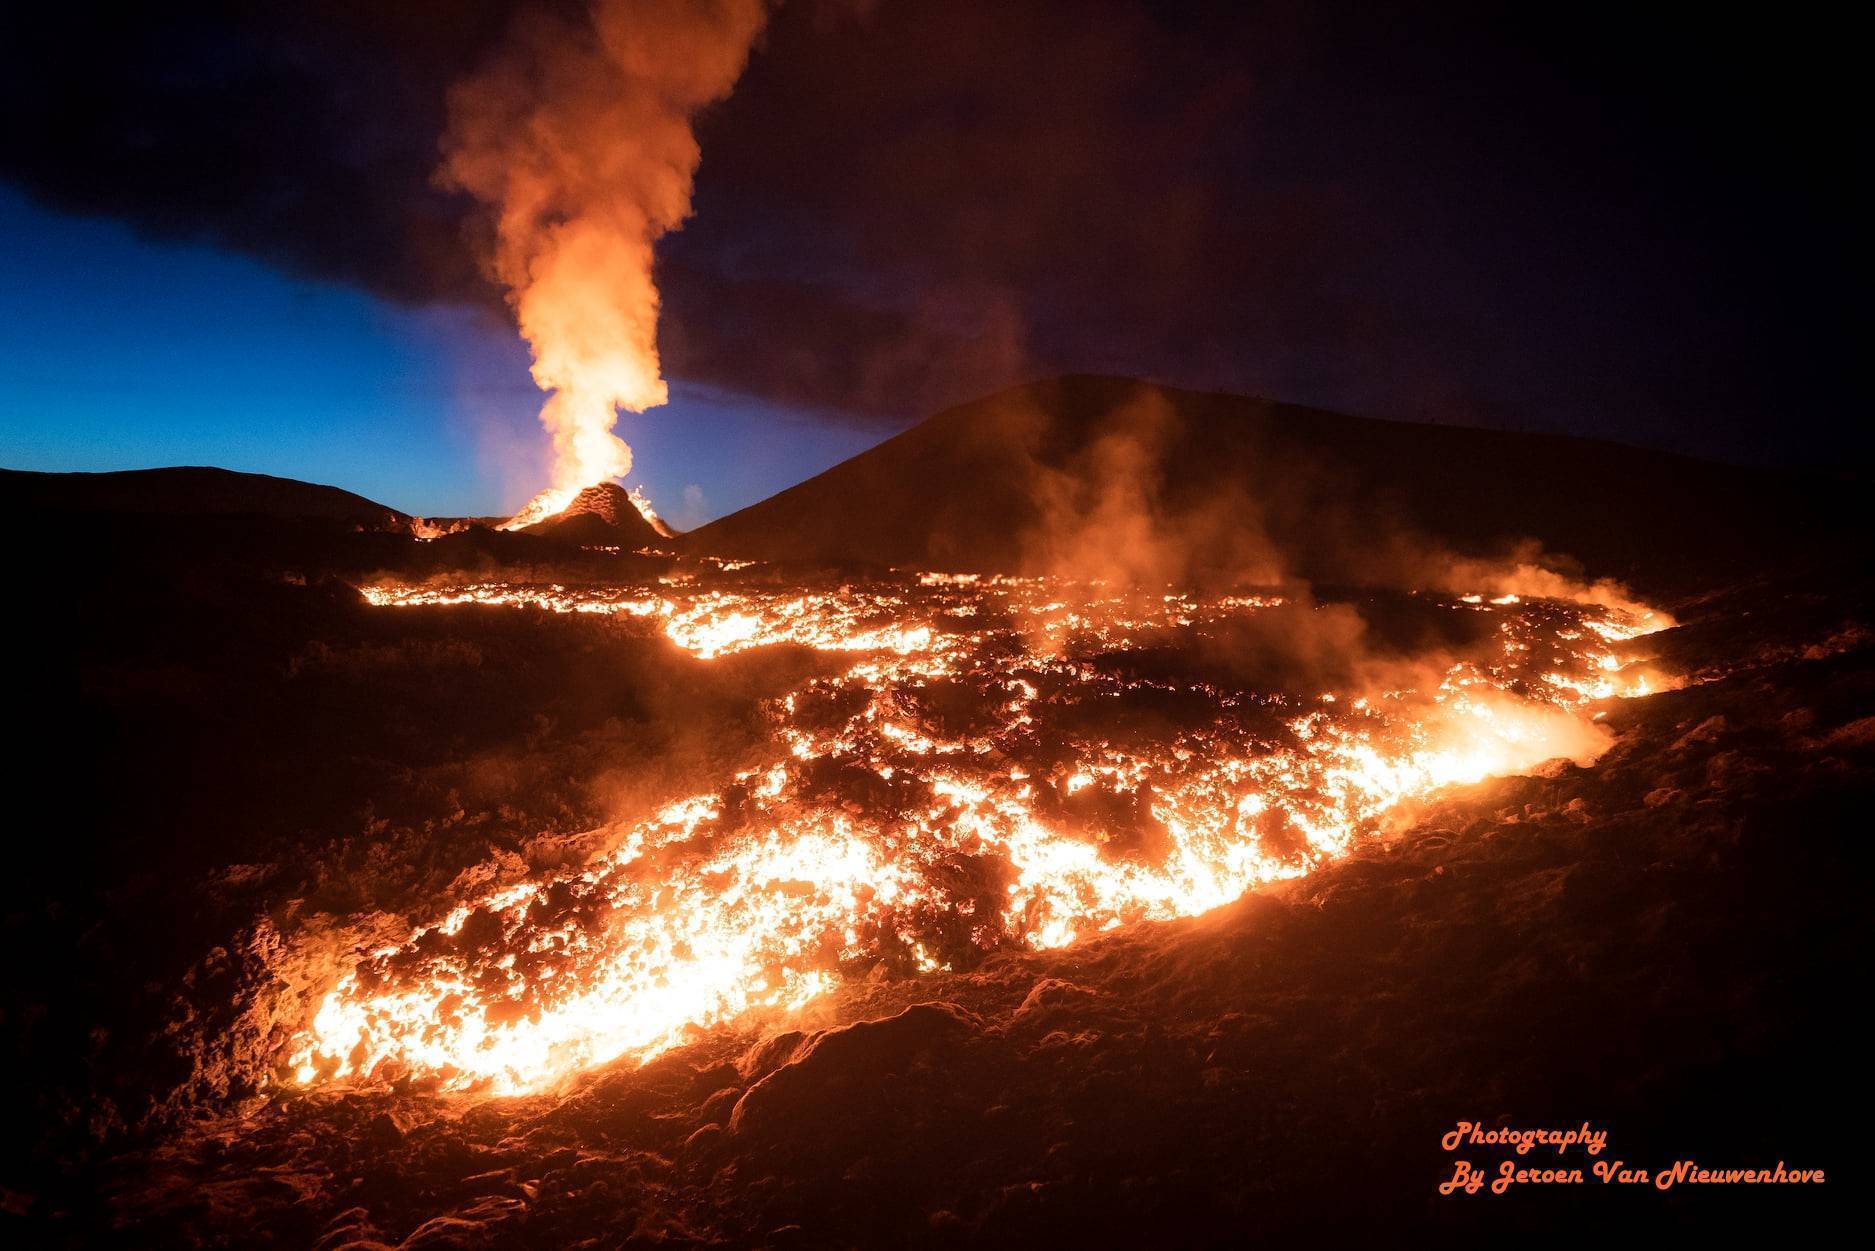 摄影图片欣赏:史上最震撼的火山喷发图景(上)